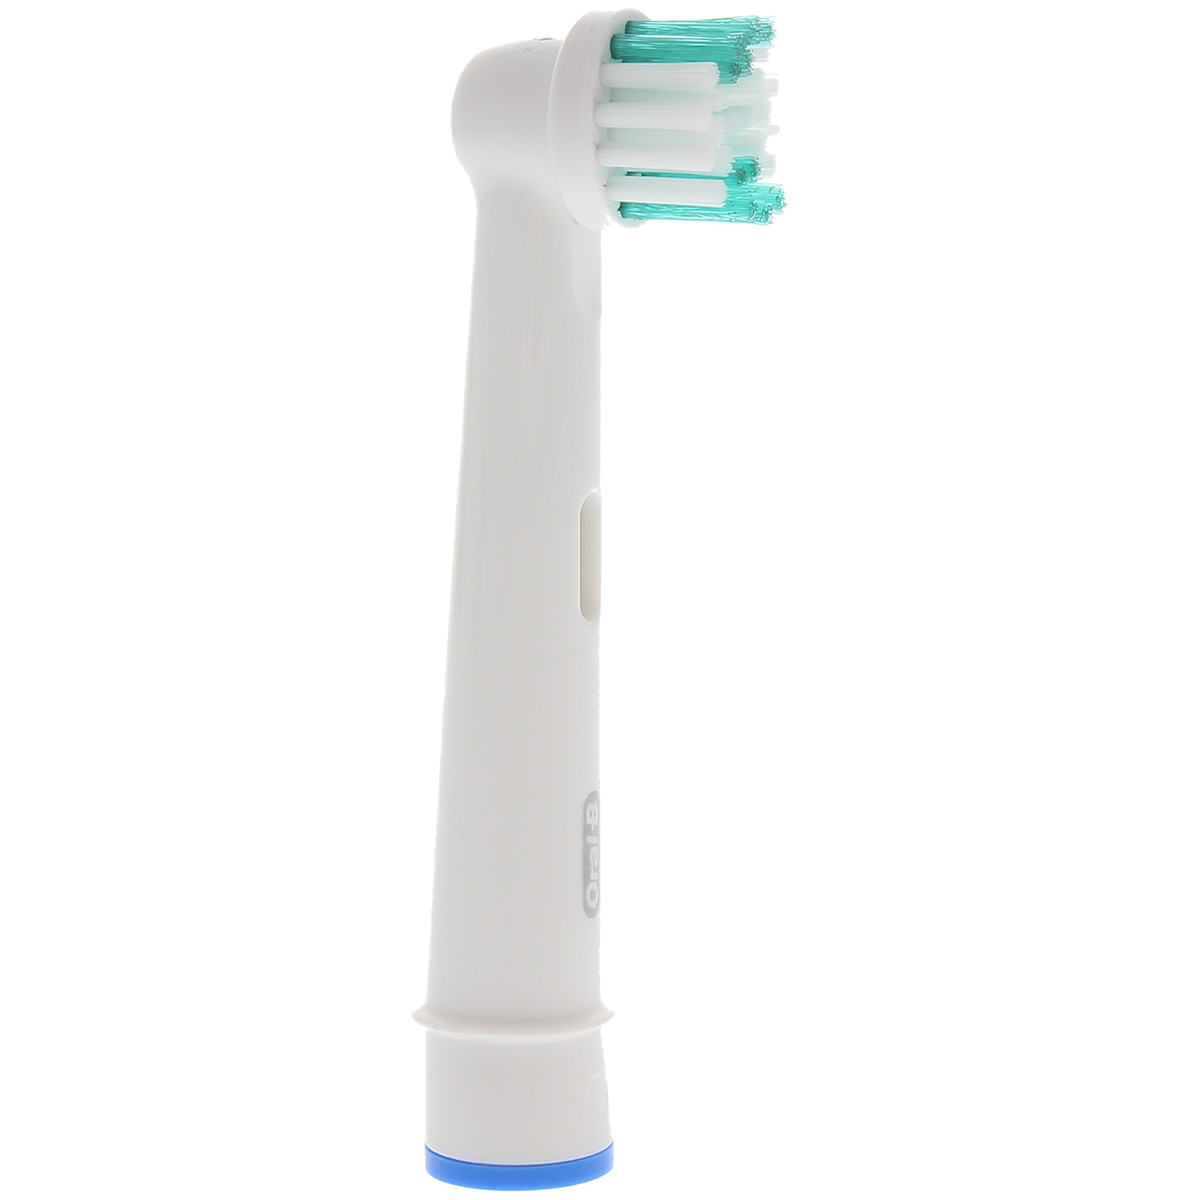 Têtes de brosse à dents Oral-B Simply Clean